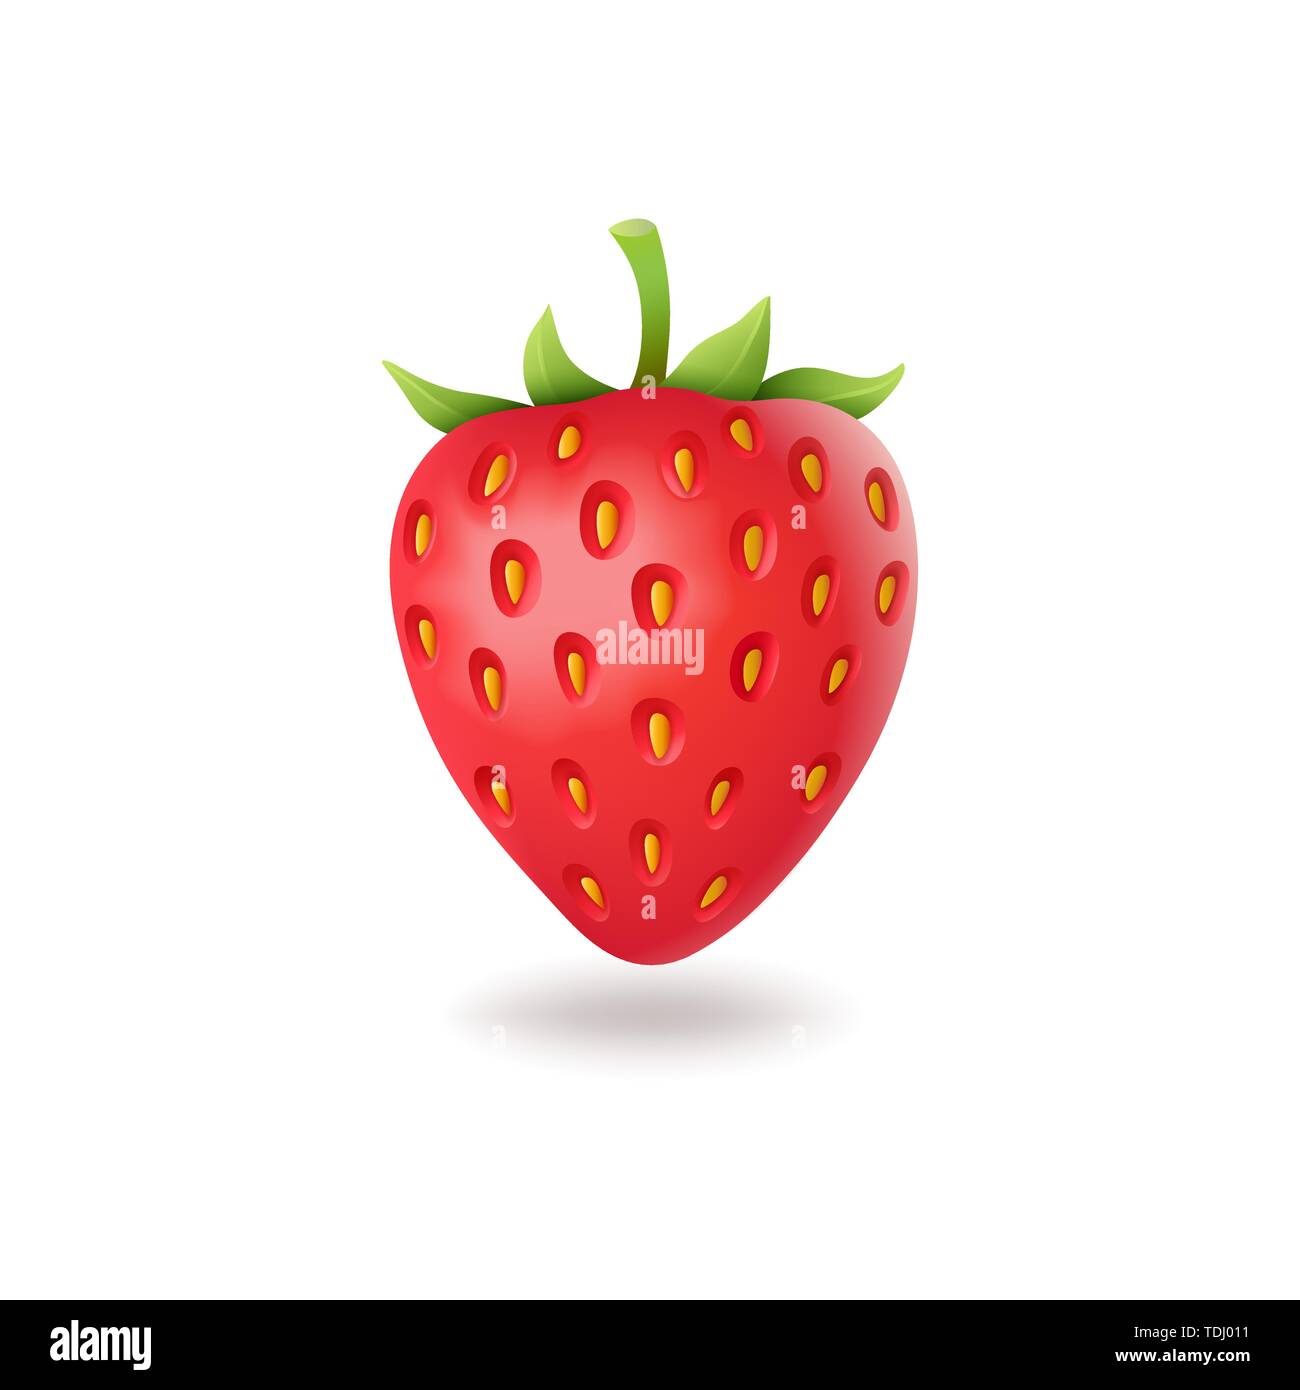 Fraise sucrée réaliste avec des feuilles vertes, fresh red berrie, isolé sur fond blanc vector illustration. Illustration de Vecteur